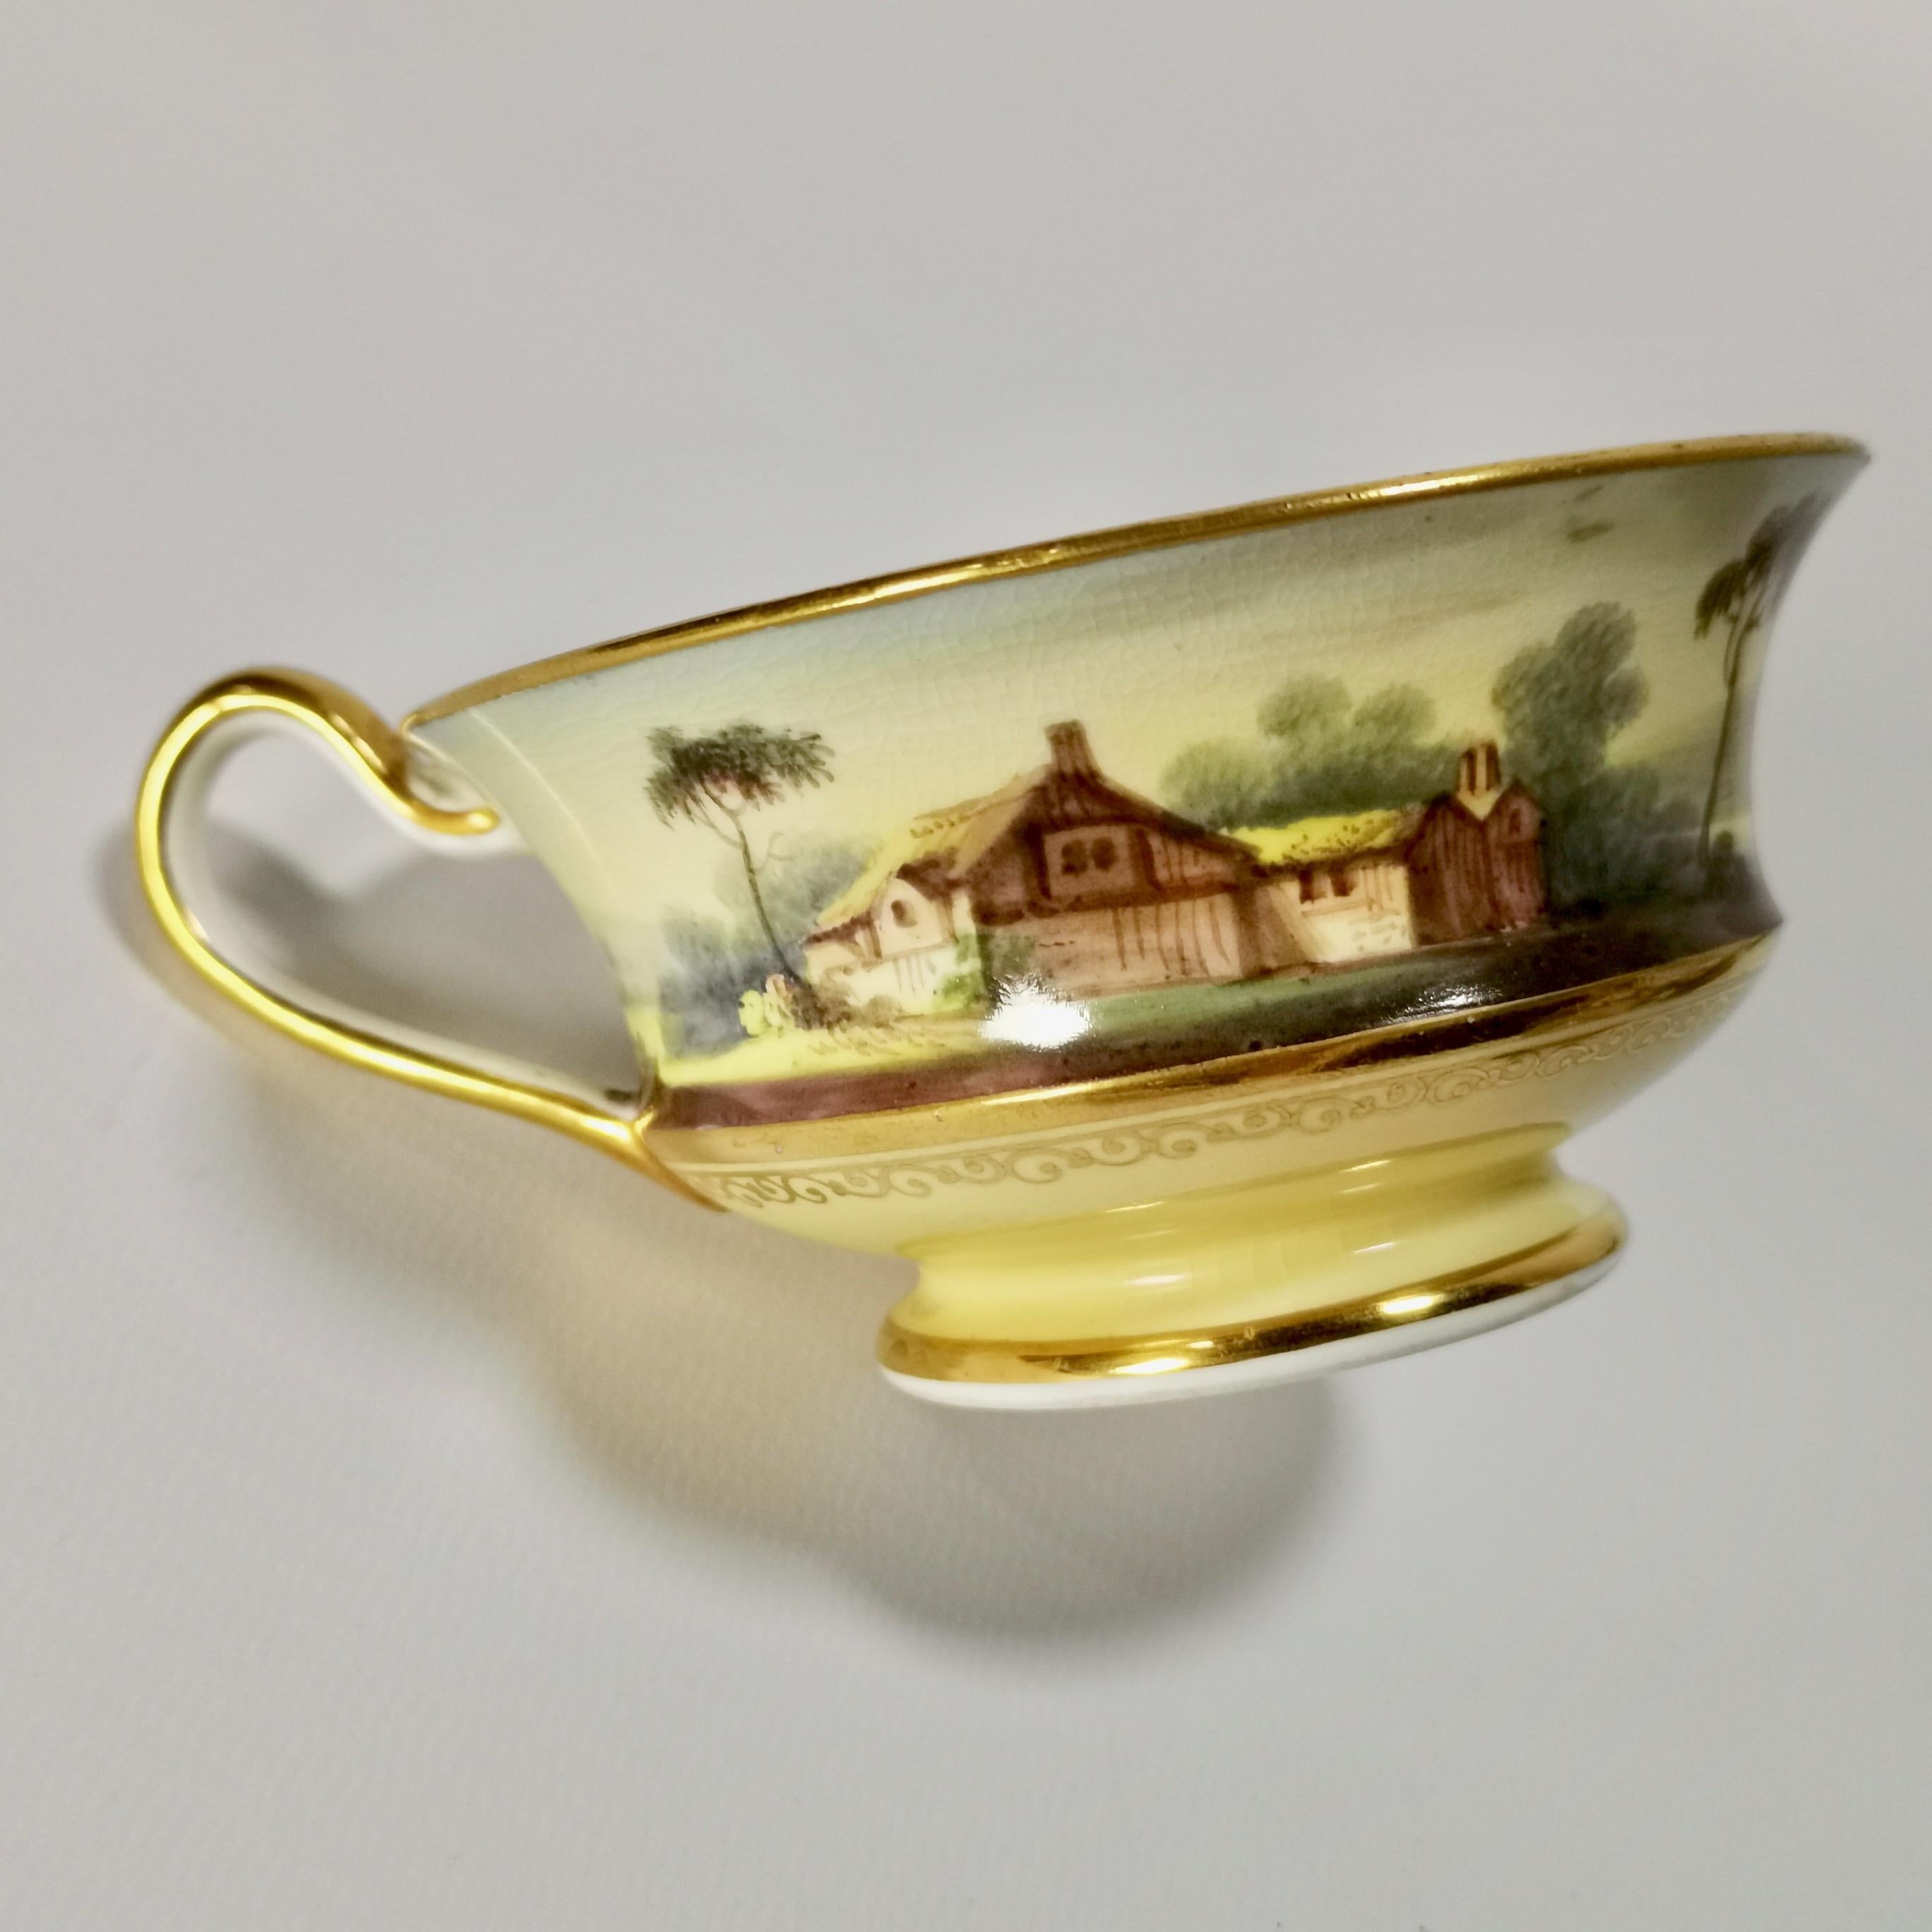 Minton Porcelain Tea Service, Yellow with Landscapes, Provenance Regency 2